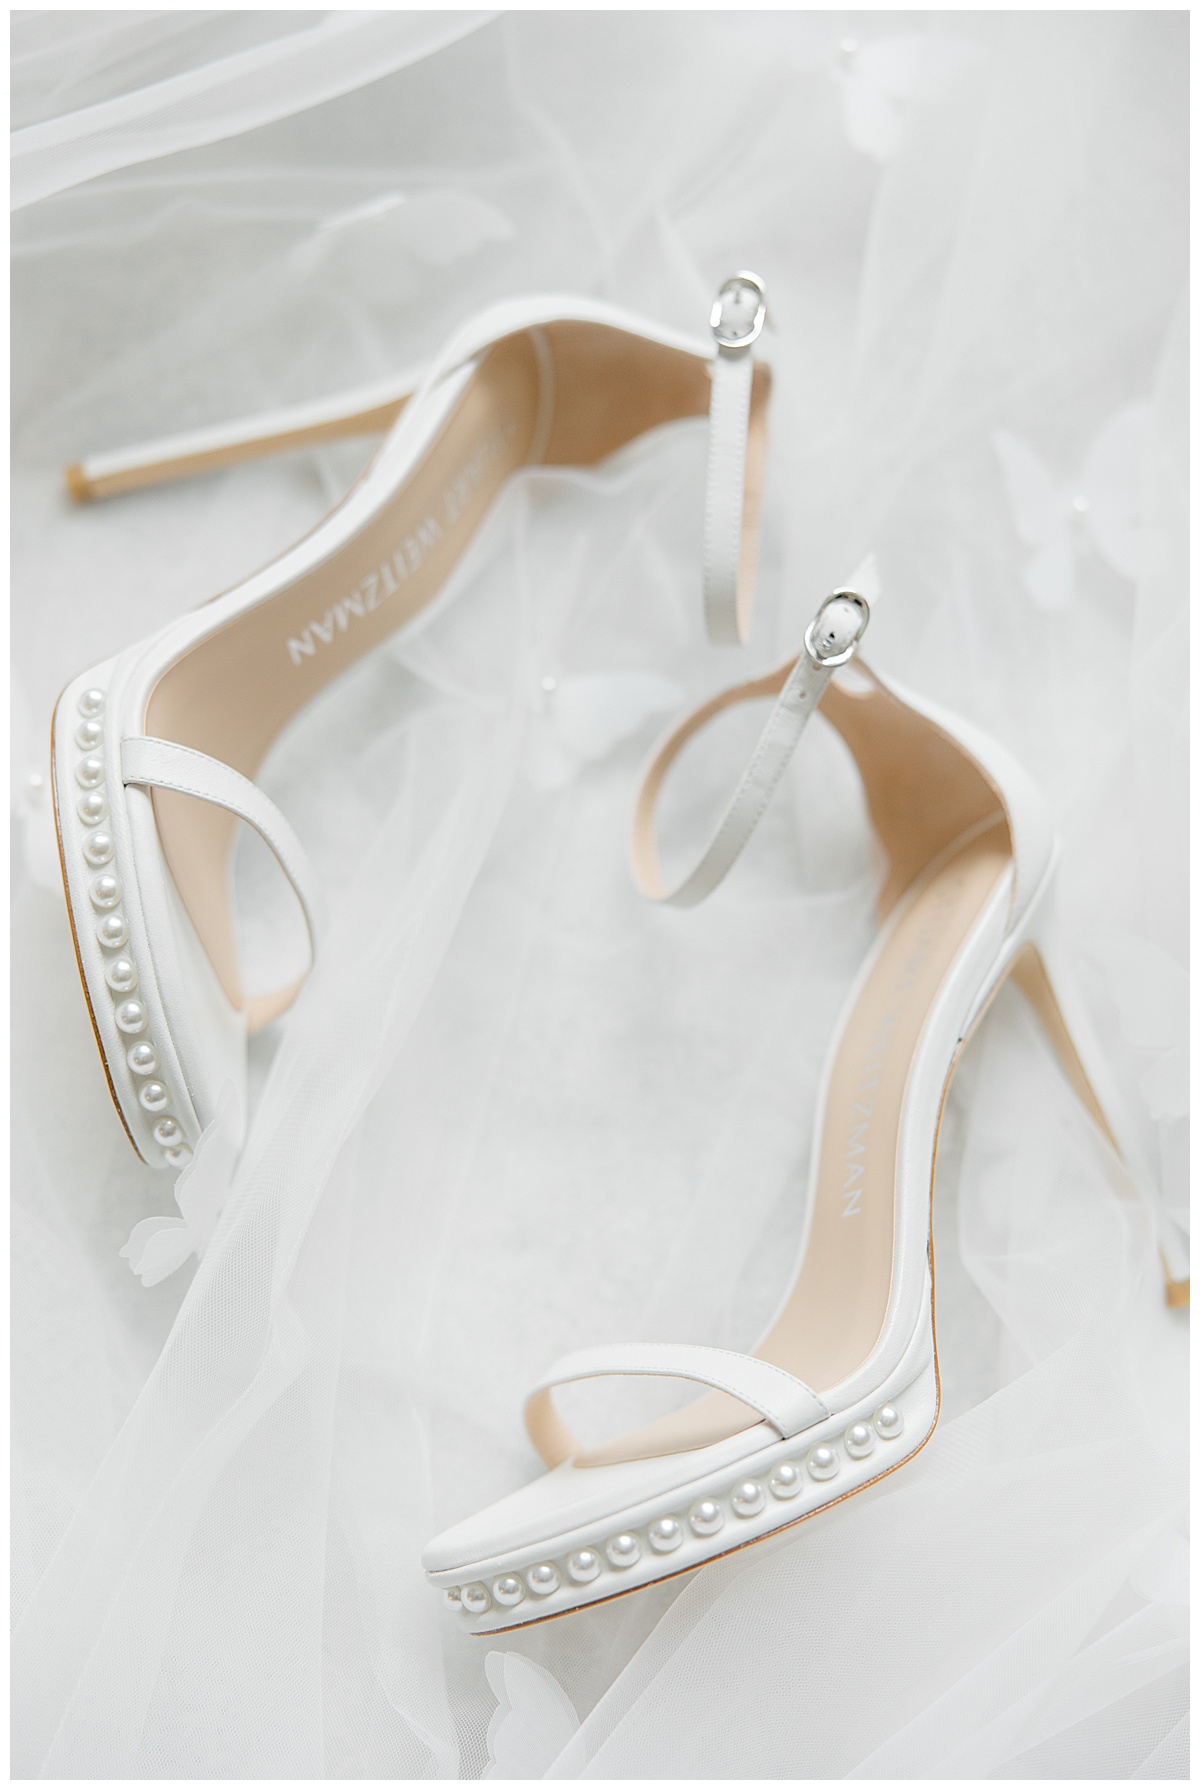 Stuart Weitzman wedding shoes laying on veil. 